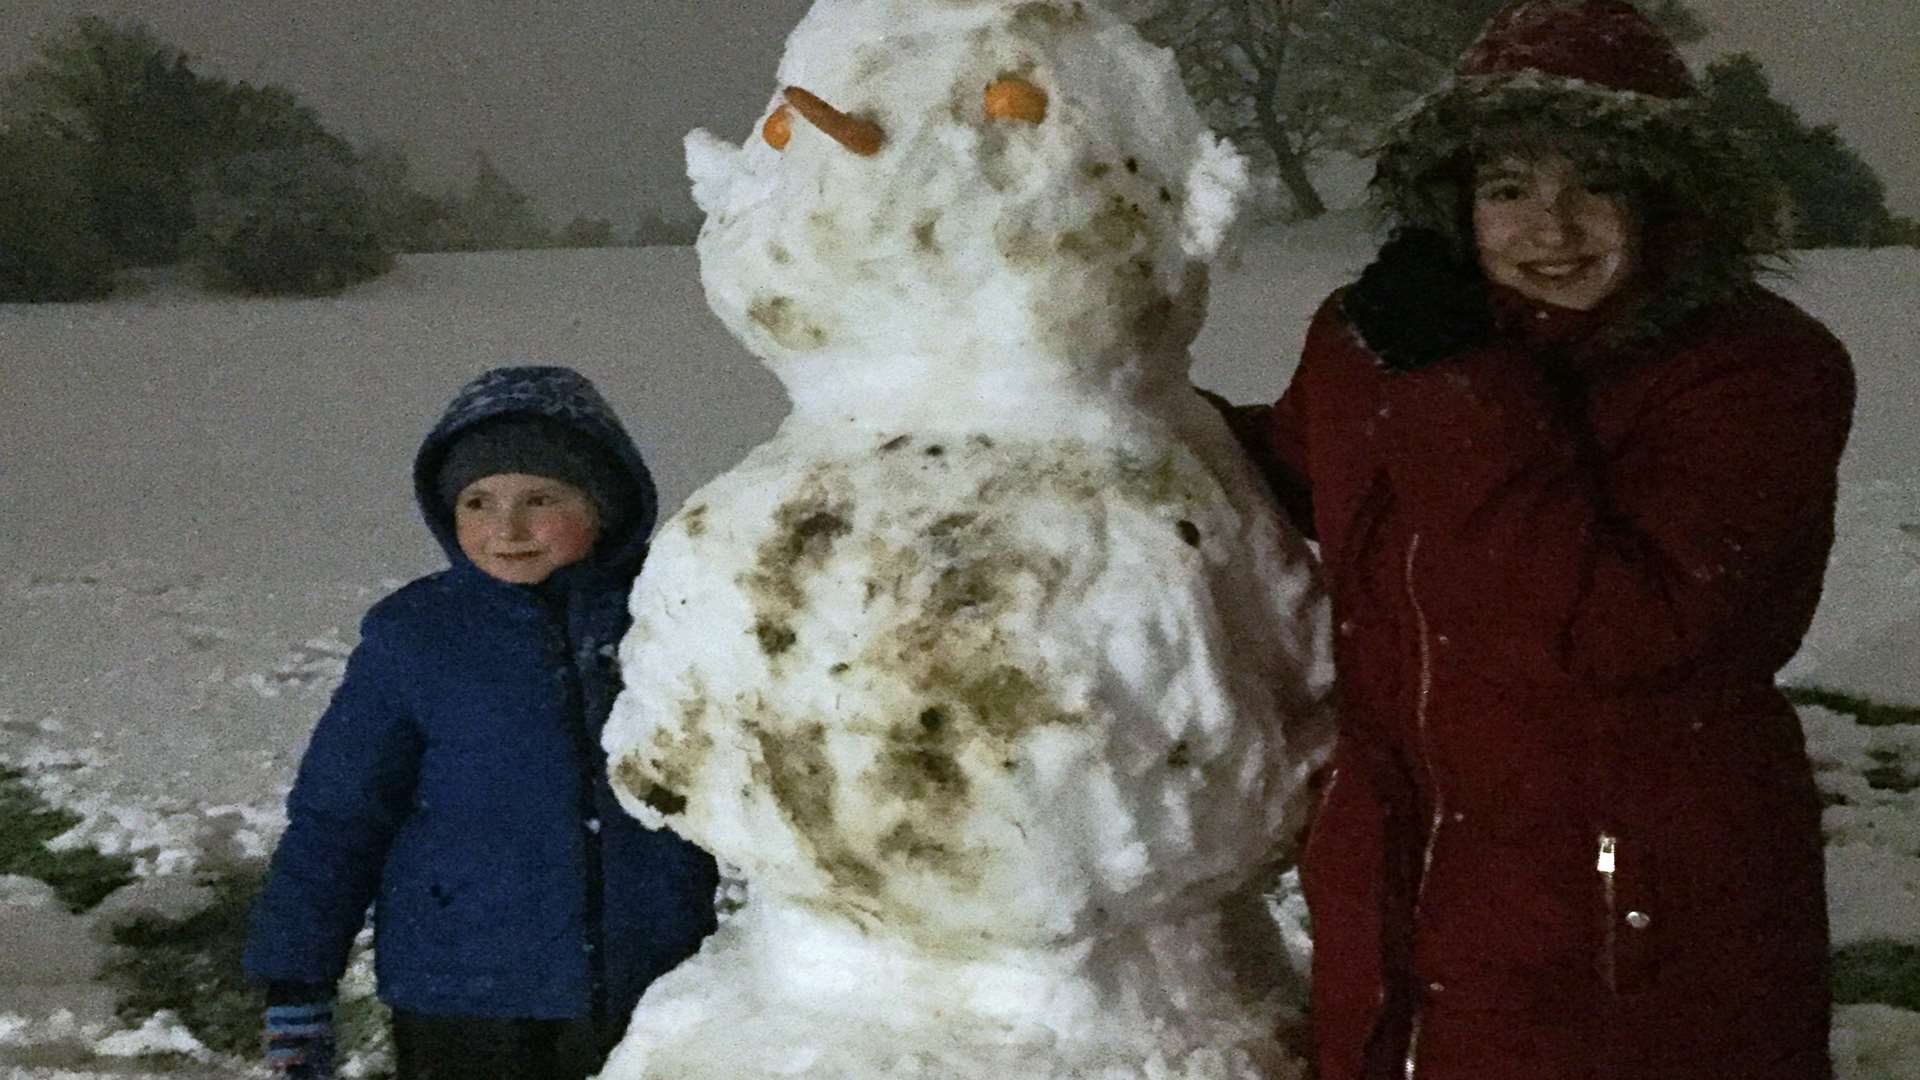 Jolana Byrtusova took this picture of her children's impressive snowman